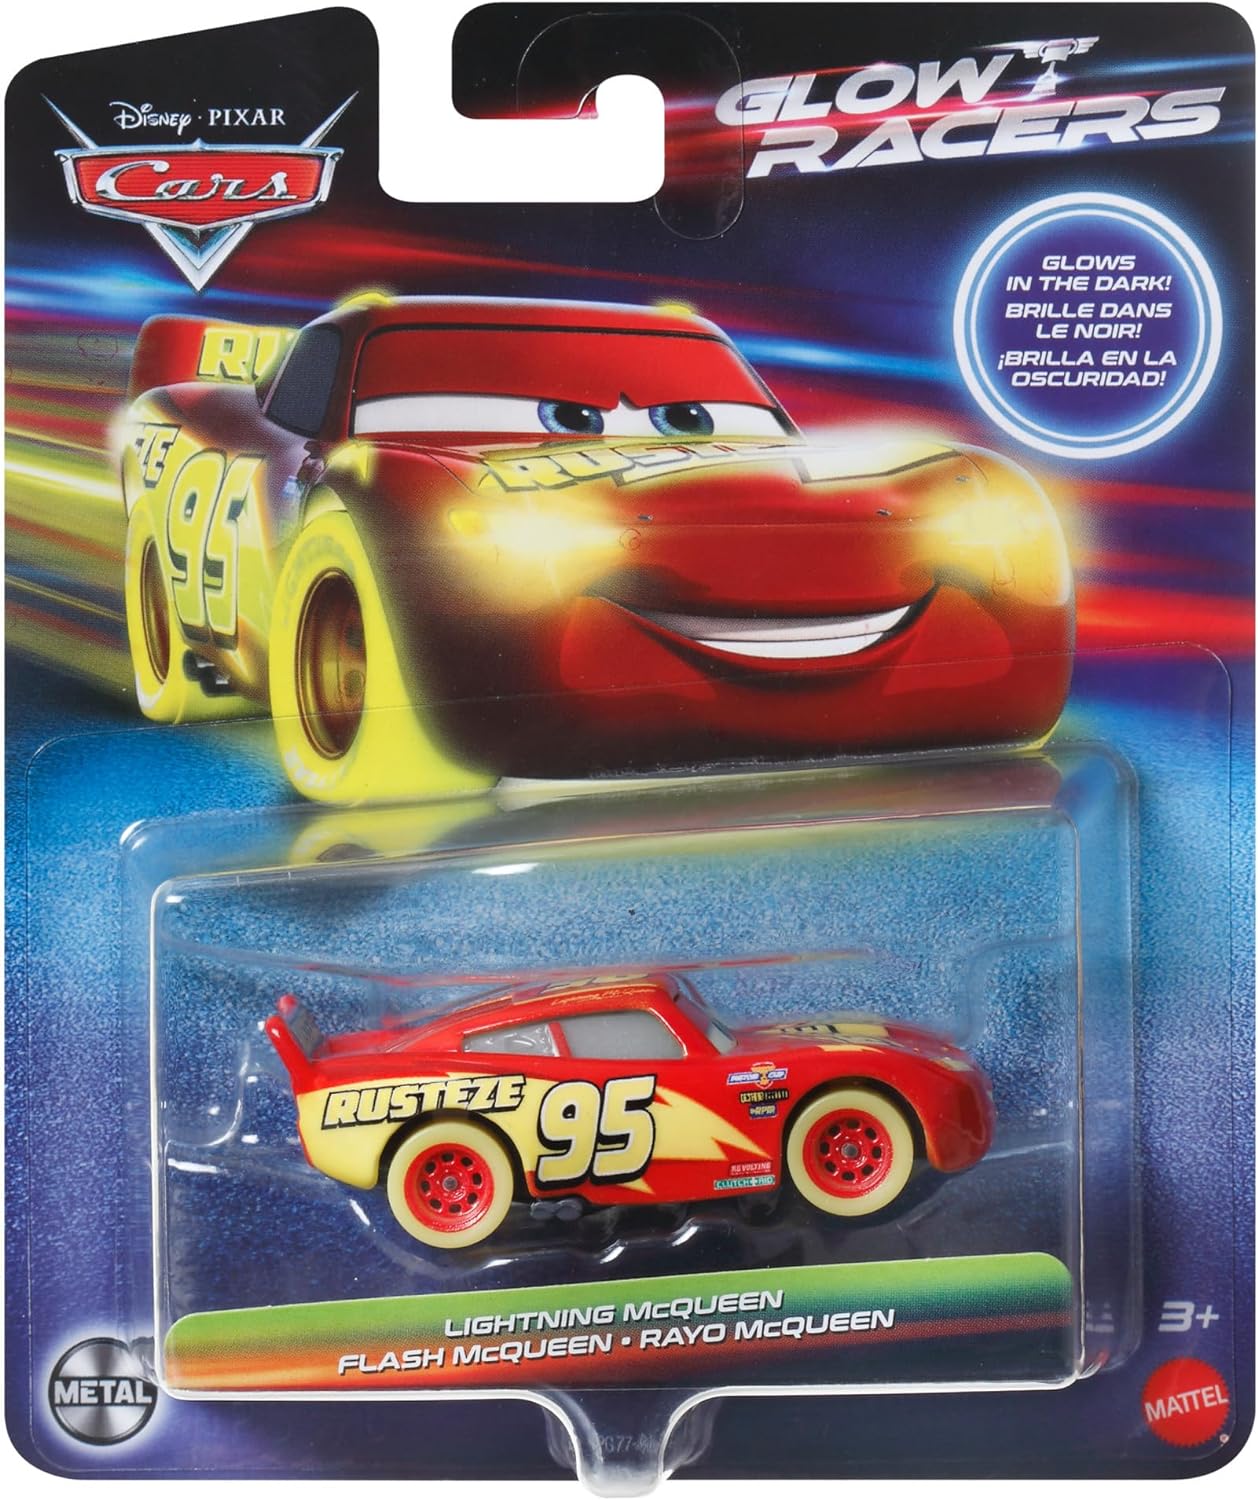 美泰汽车总动员 Pixar Cars Glow Racers 夜光系列玩具车辆模型